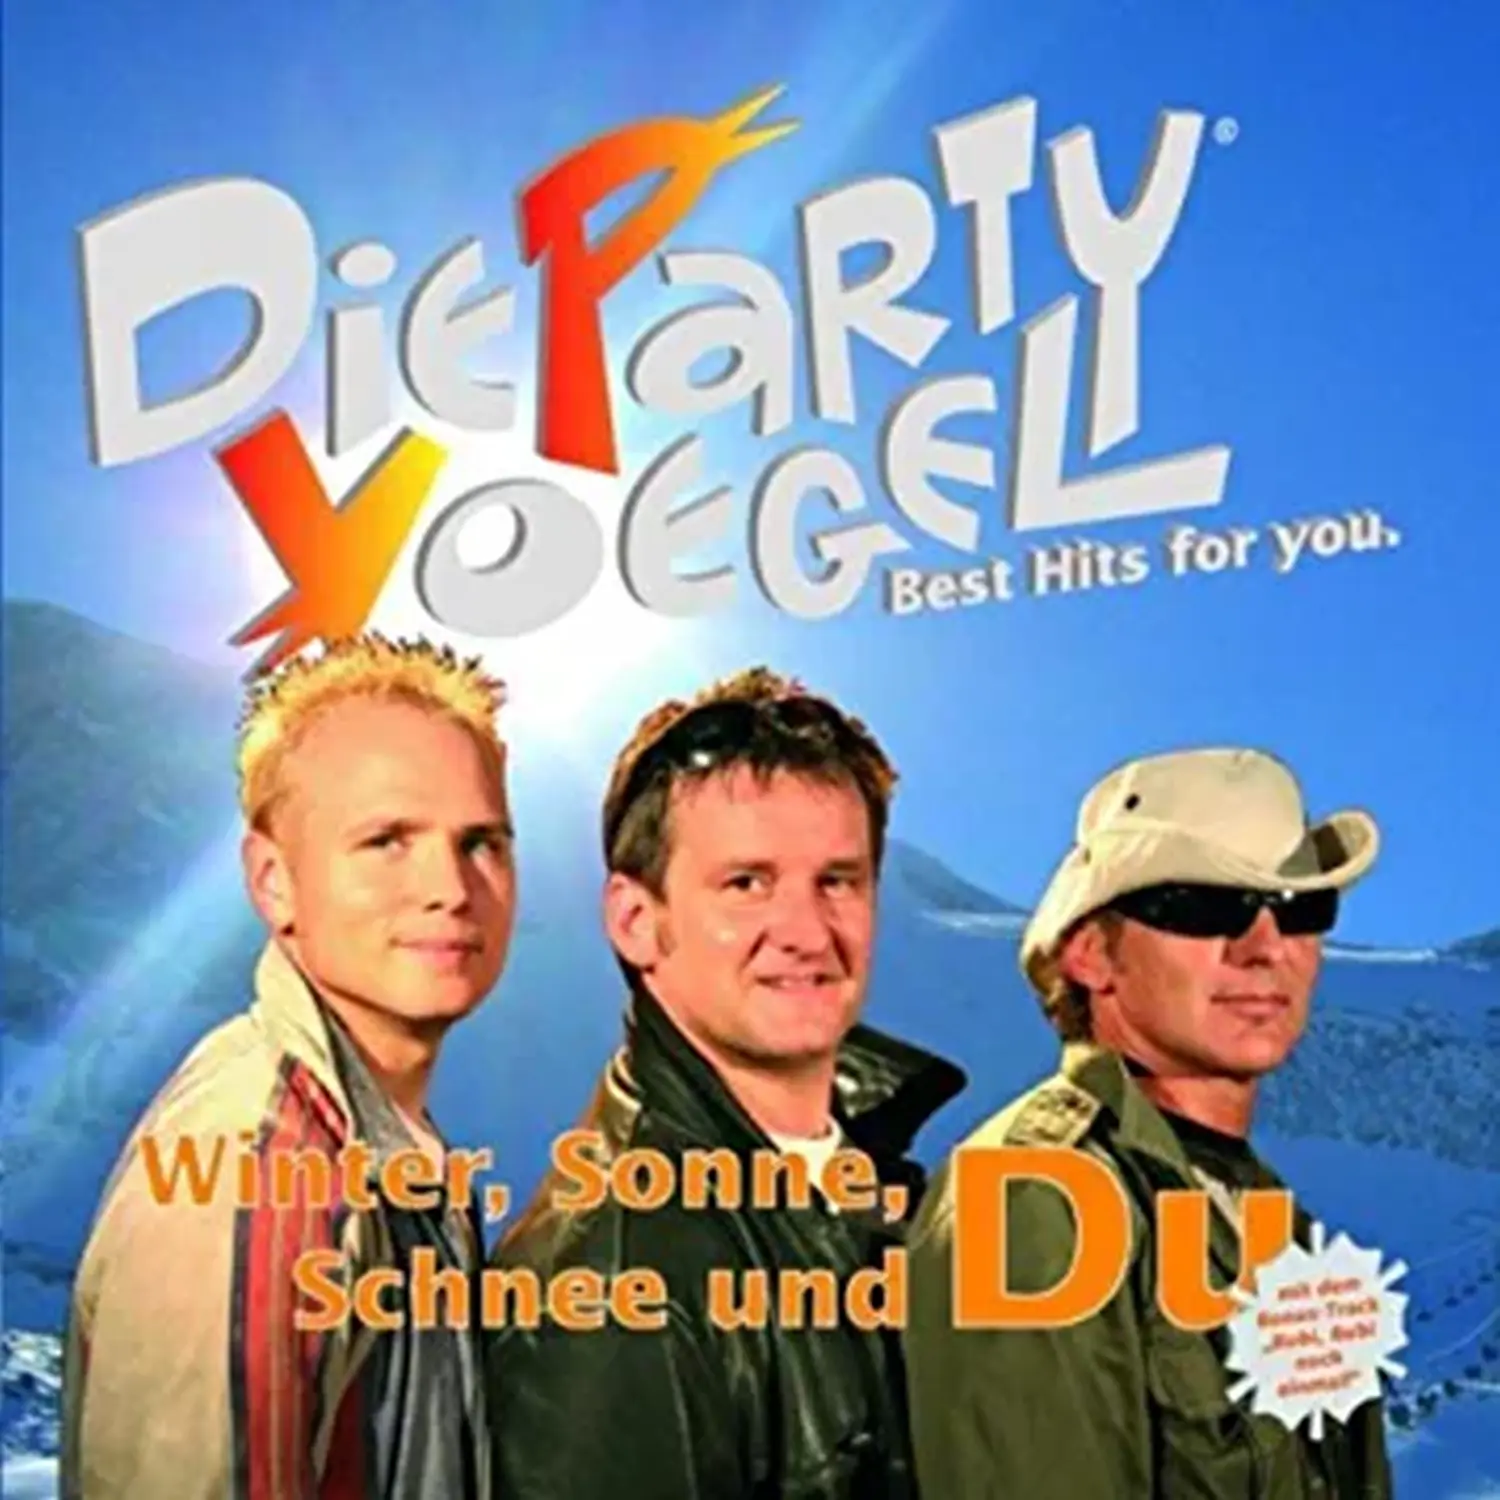 CD-Cover Die PARTYVÖGEL GbR